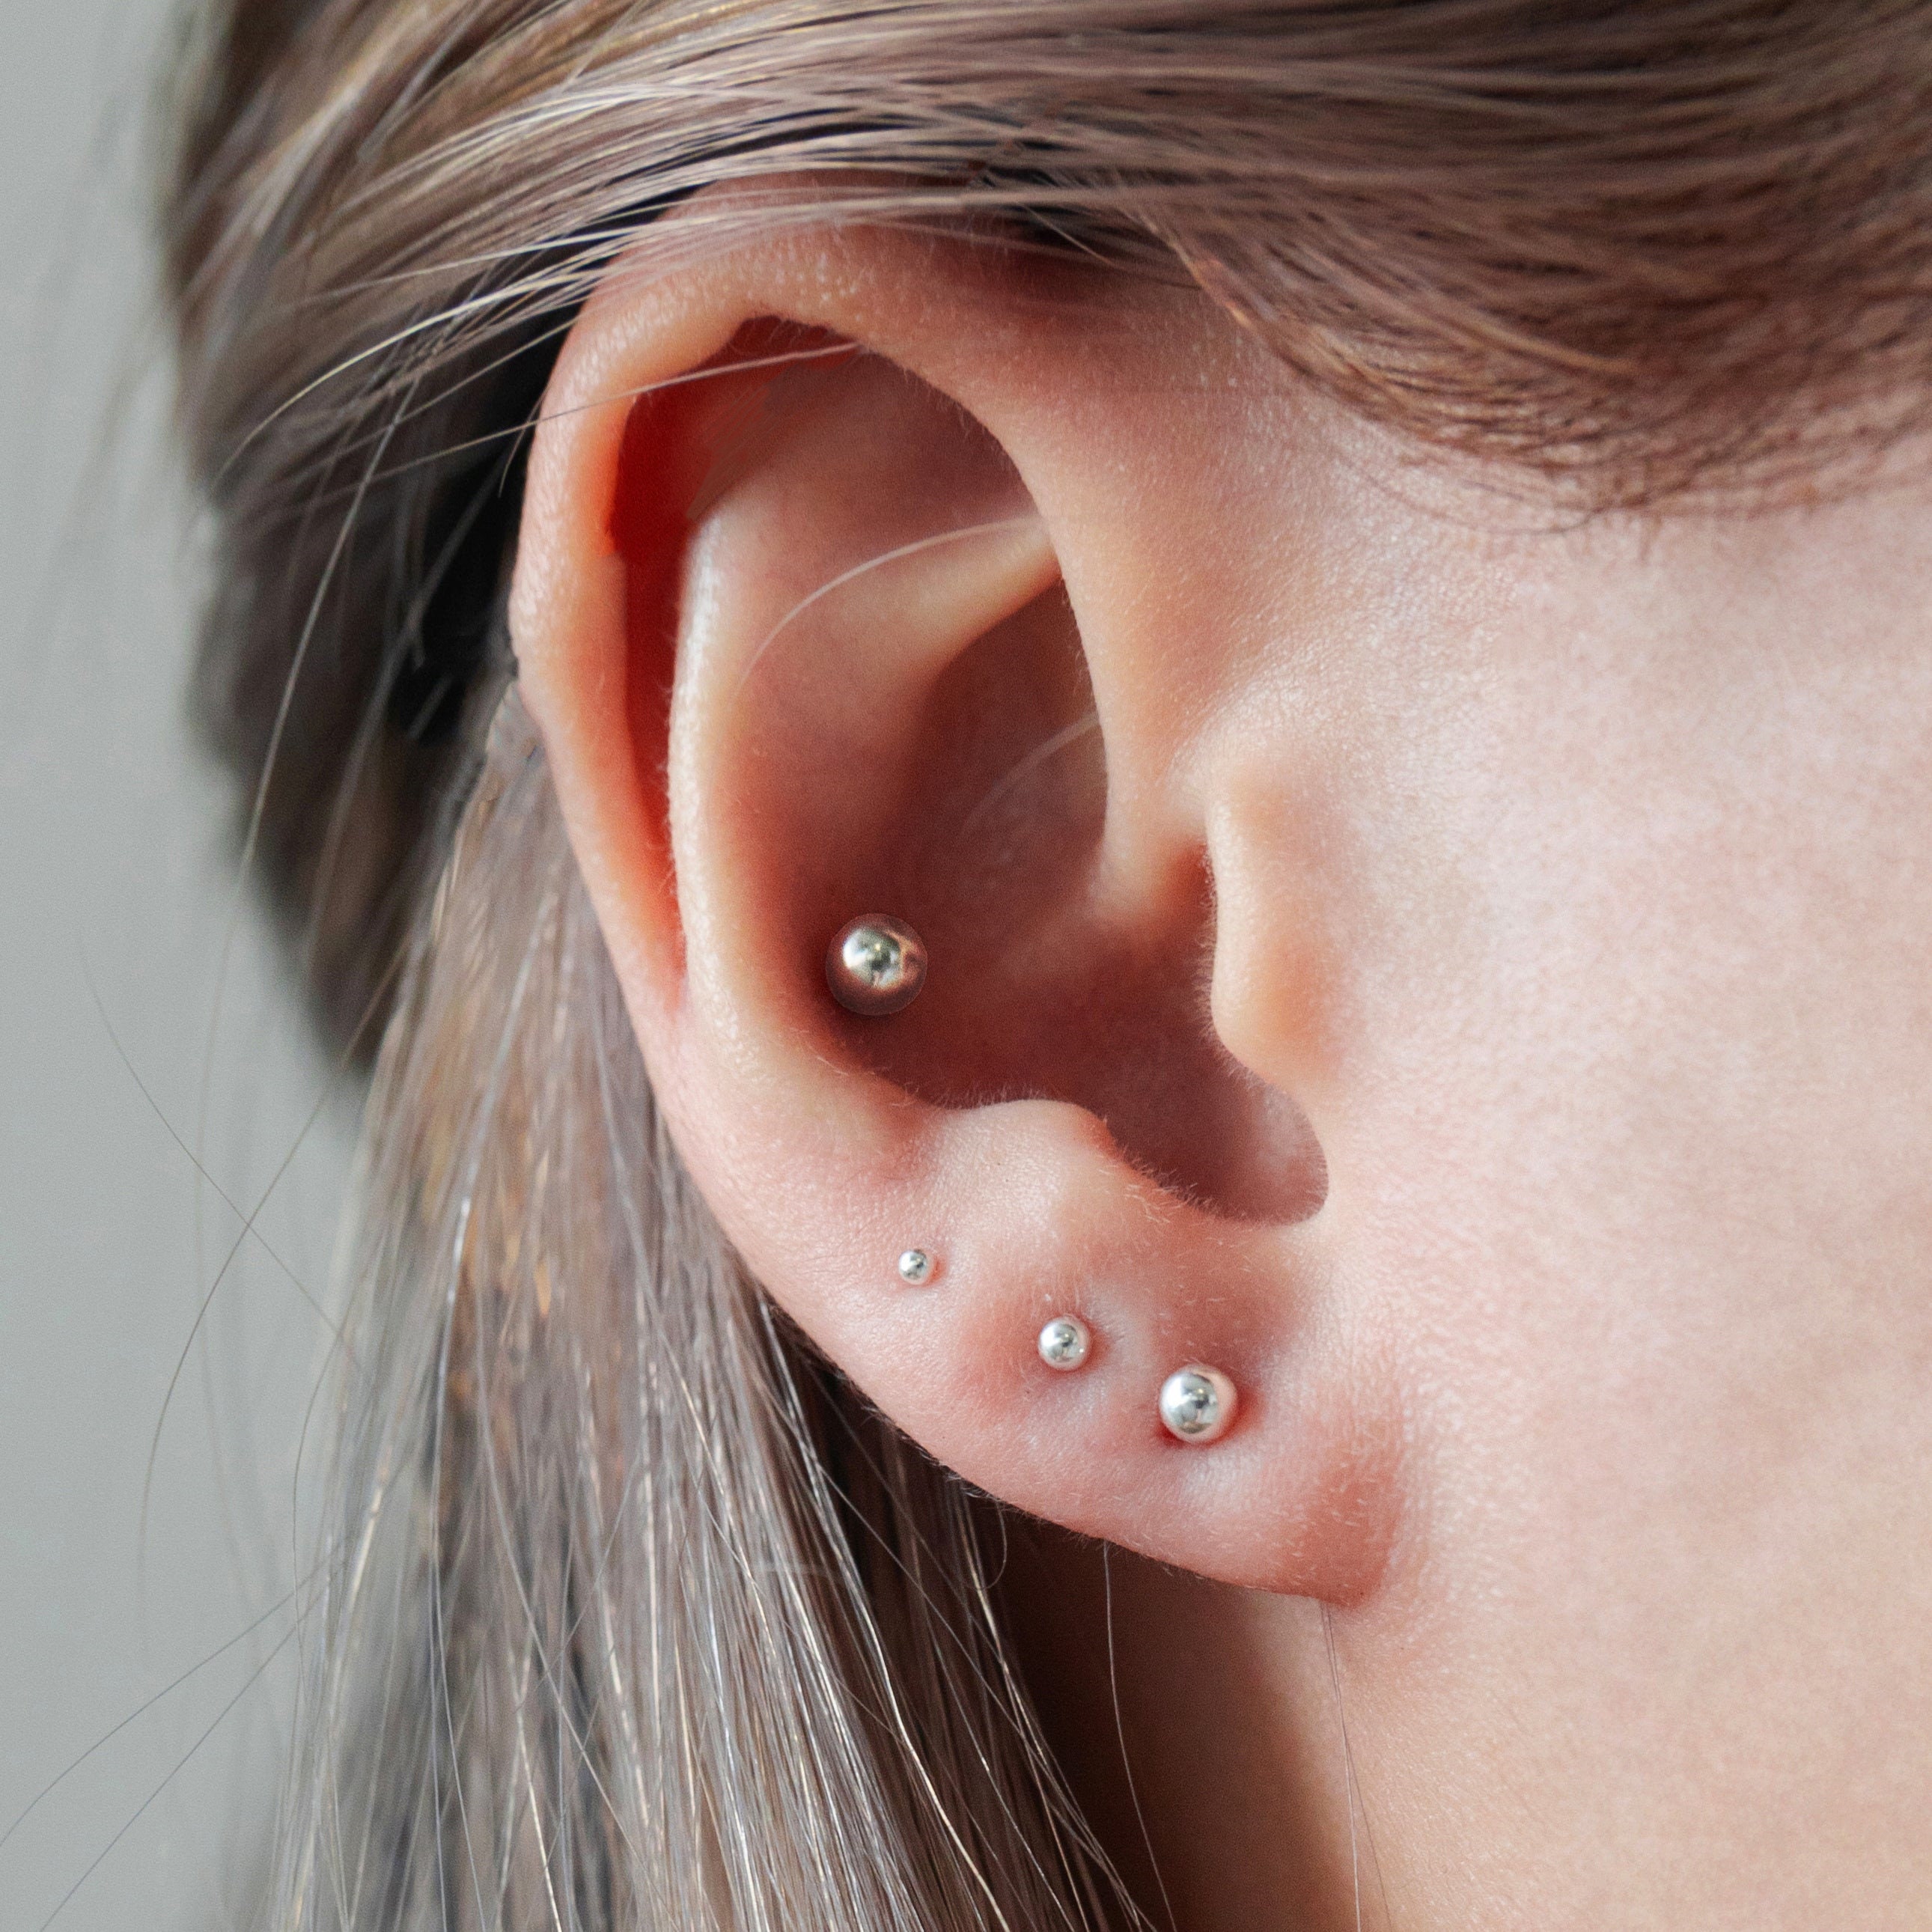 Small Stud Earrings for Women Silver Plated Balloon Dog 20G Cartilage  Earrings Hypoallergenic Flatback Earrings Piercing Jewelry - AliExpress